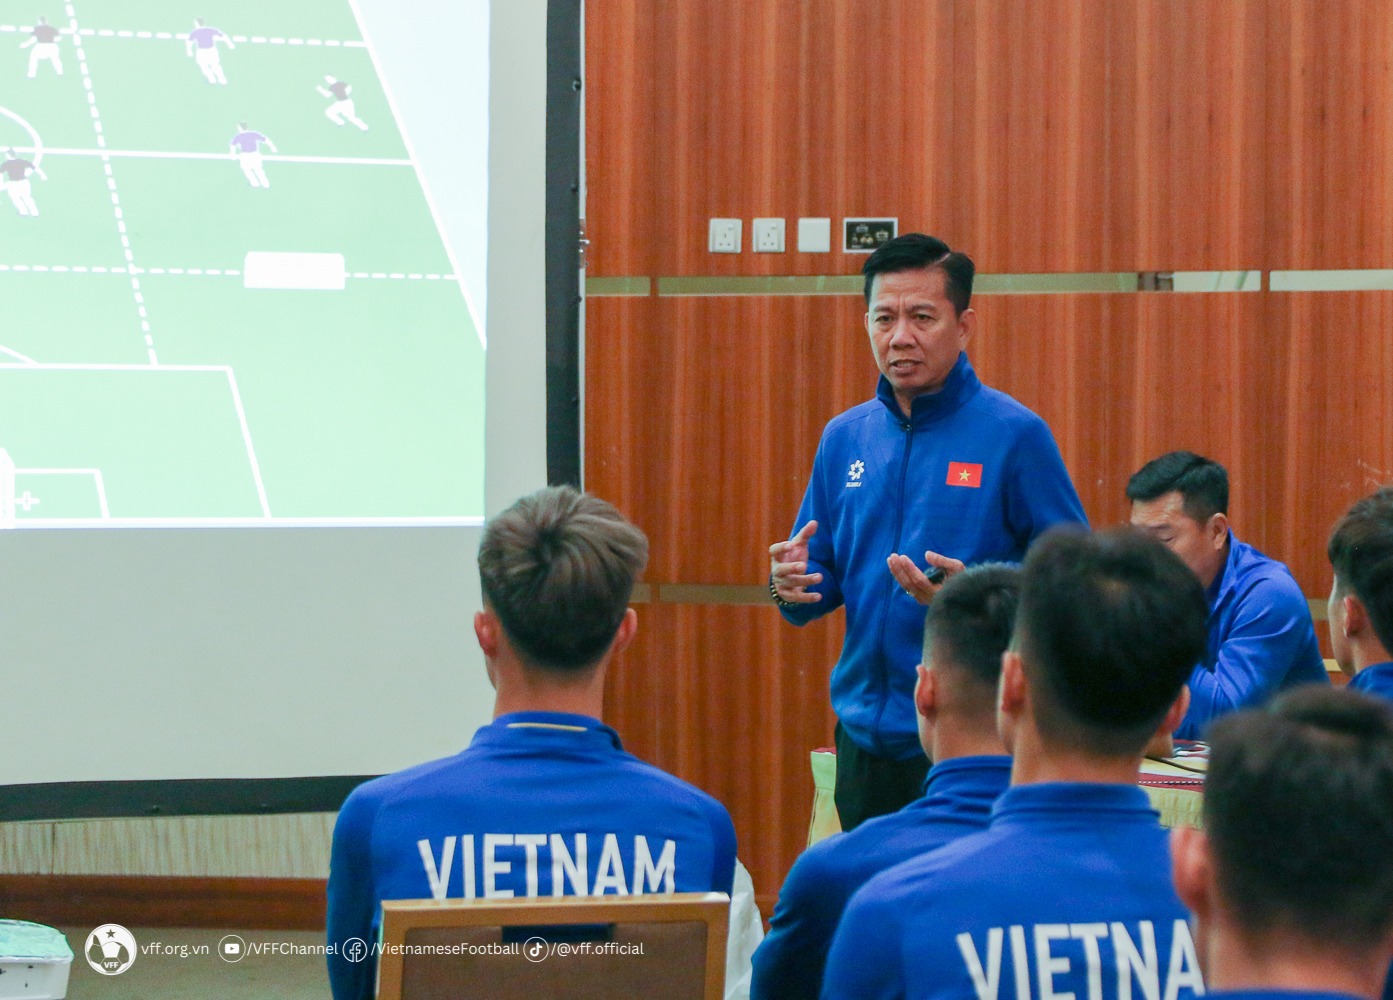 HLV Hoàng Anh Tuấn chốt danh sách 23 cầu thủ tham dự VCK U23 châu Á 2024- Ảnh 1.